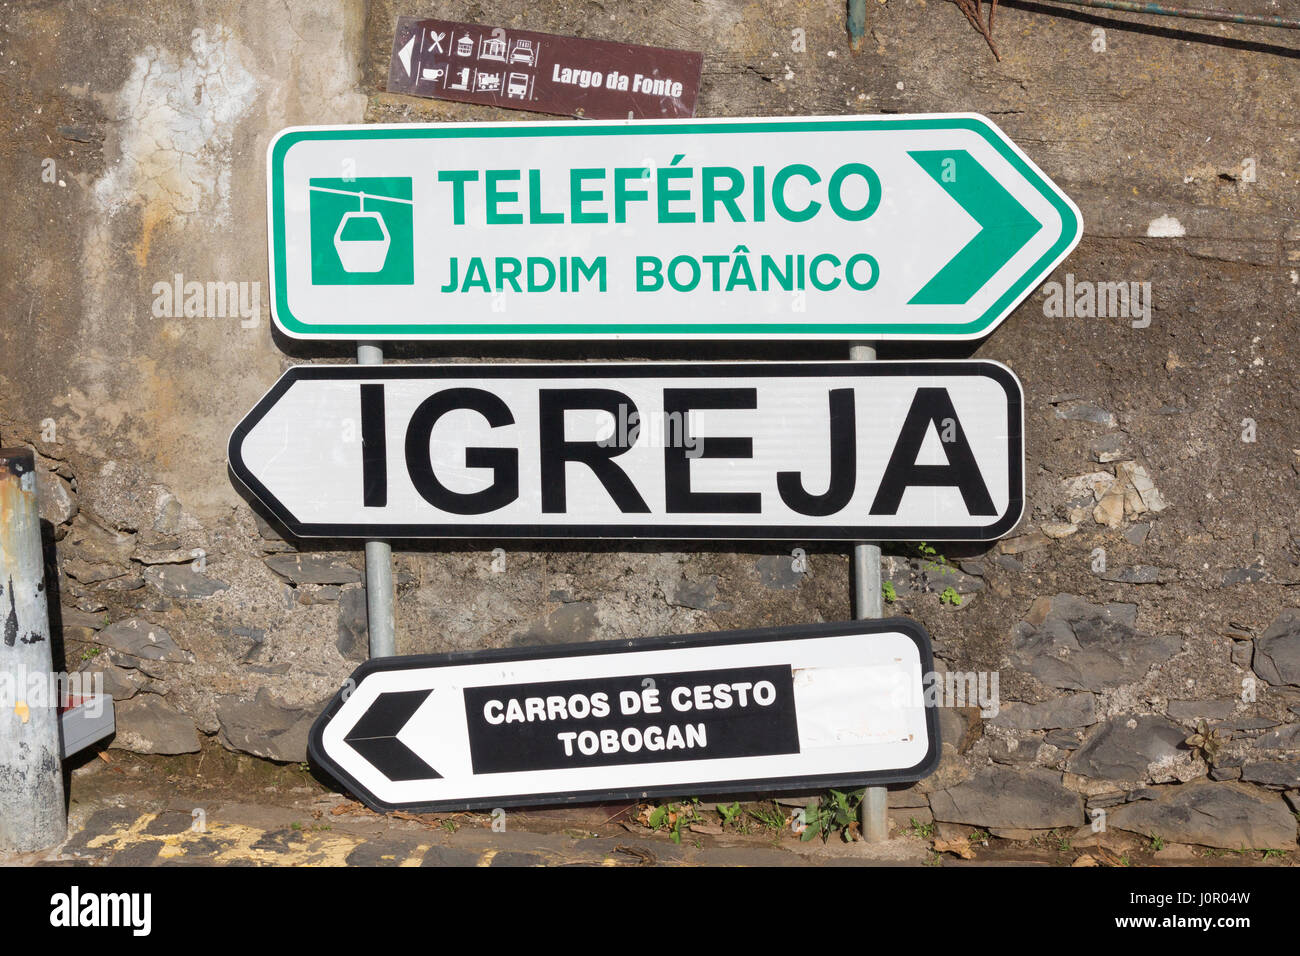 Direzioni in Monte, Funchal, per il cavo auto, giardino botanico, Monte la chiesa e la pista di slittino Foto Stock